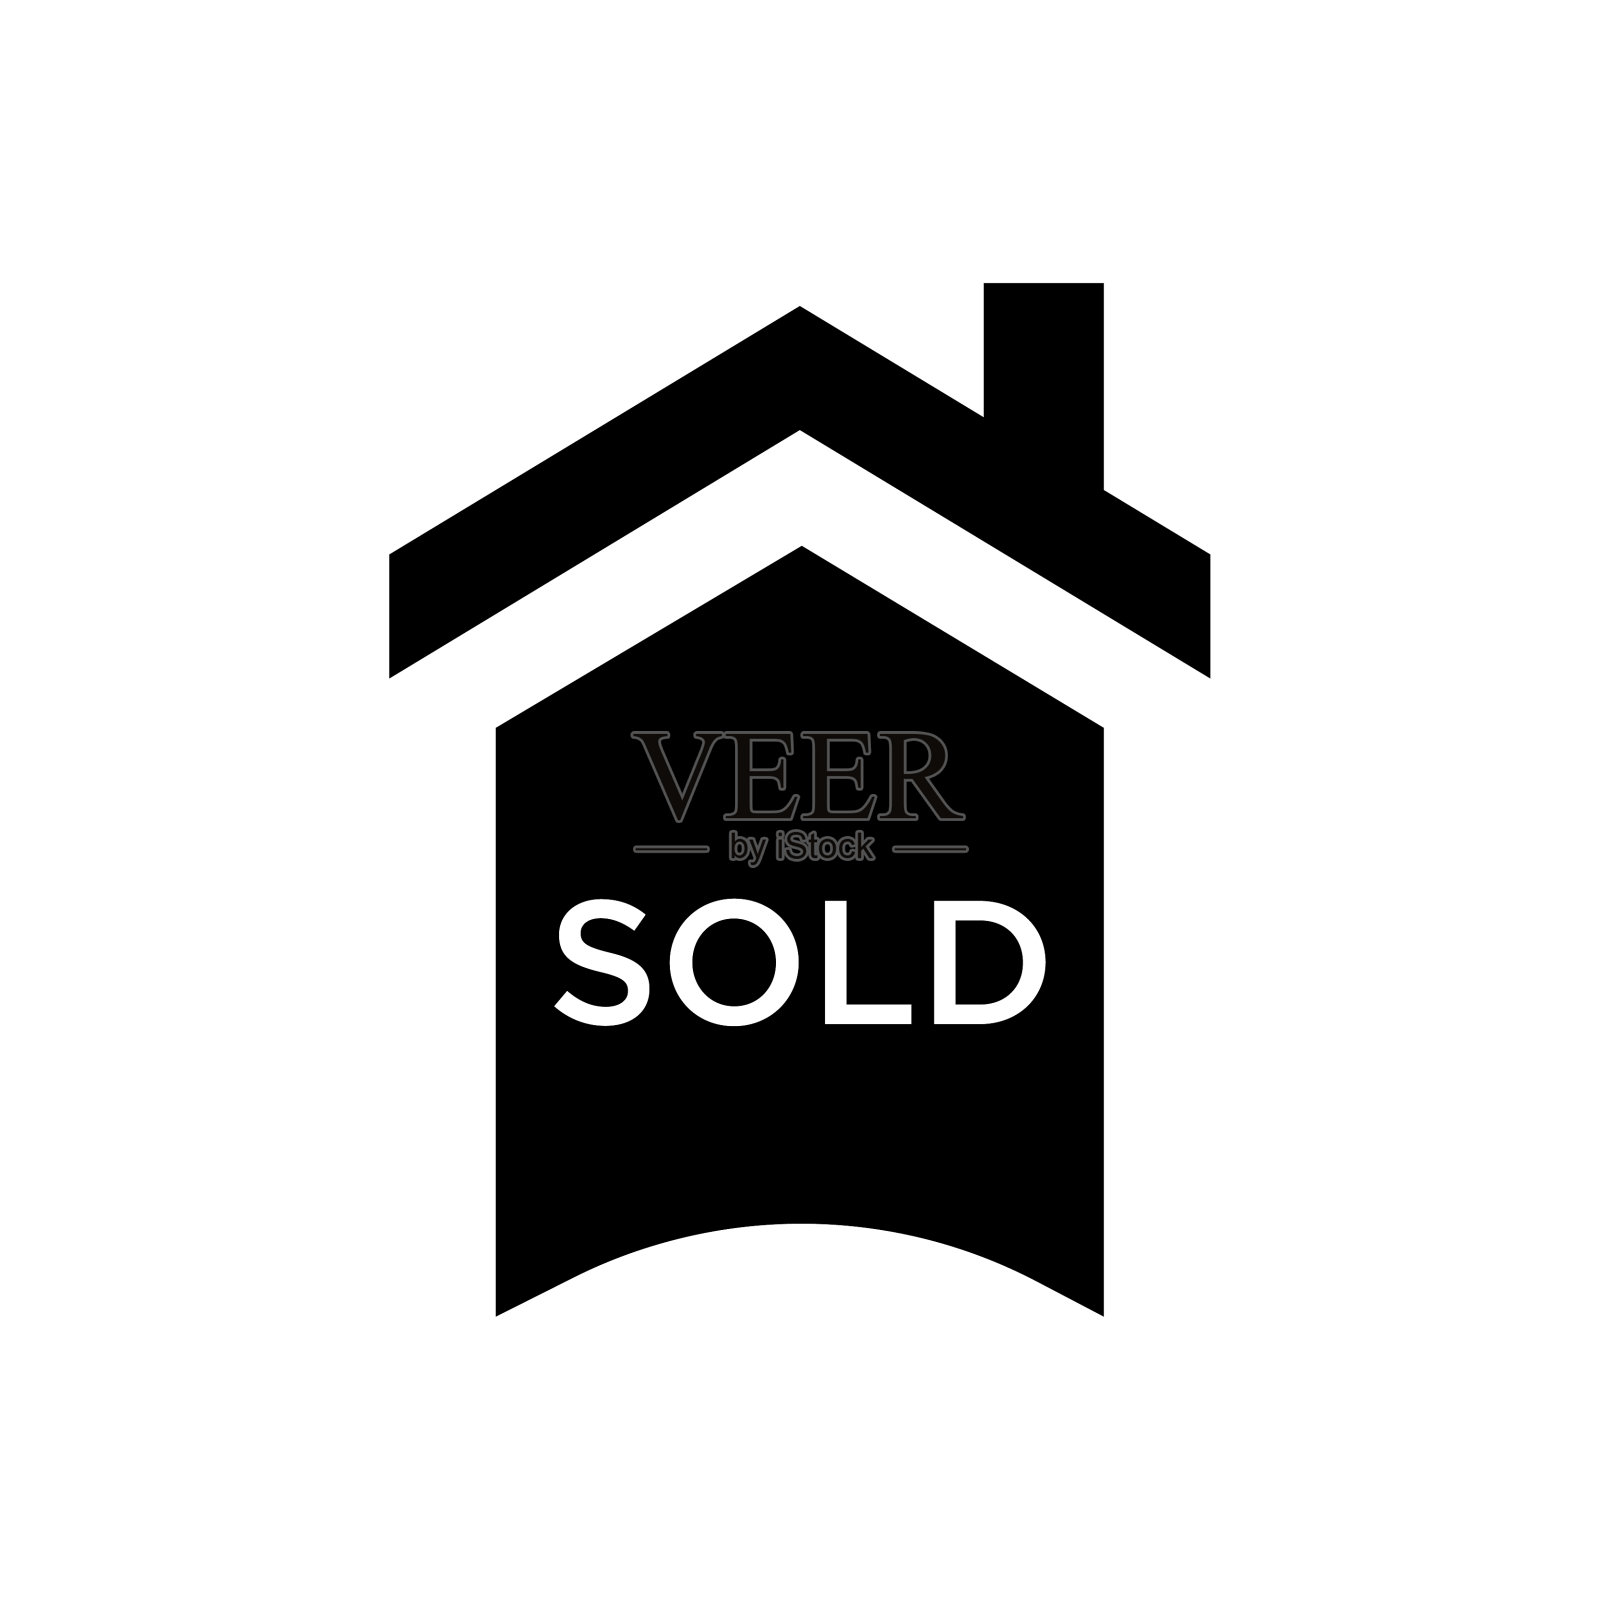 房屋出售标志图标矢量黑色字形房屋出售标志设计元素图片